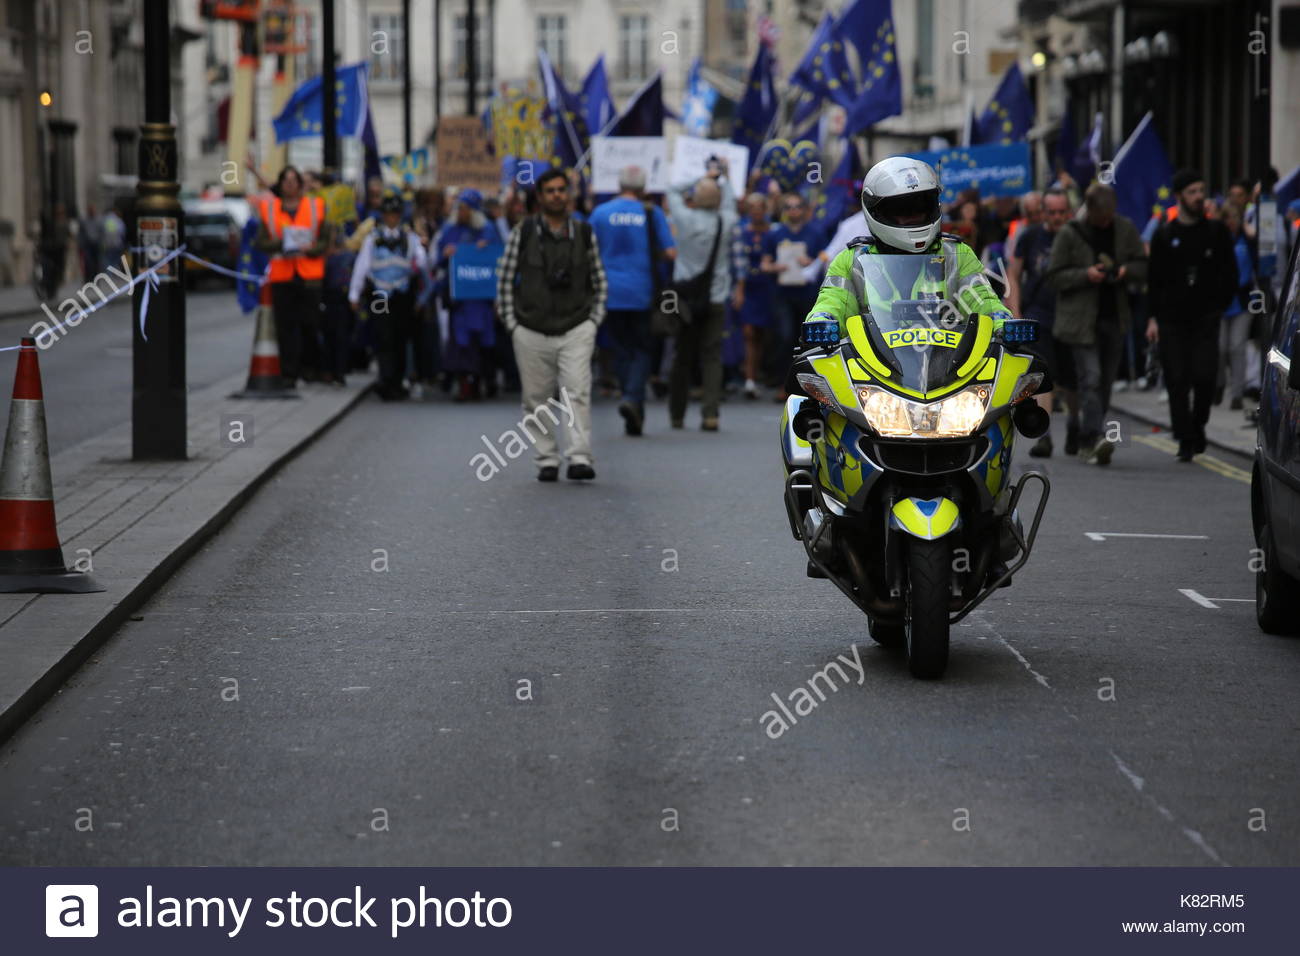 Ein Polizist auf einem Motorrad führt ein anti-Brexit pro-EU-Rallye durch die Straßen von London in Richtung Westminster. Stockfoto